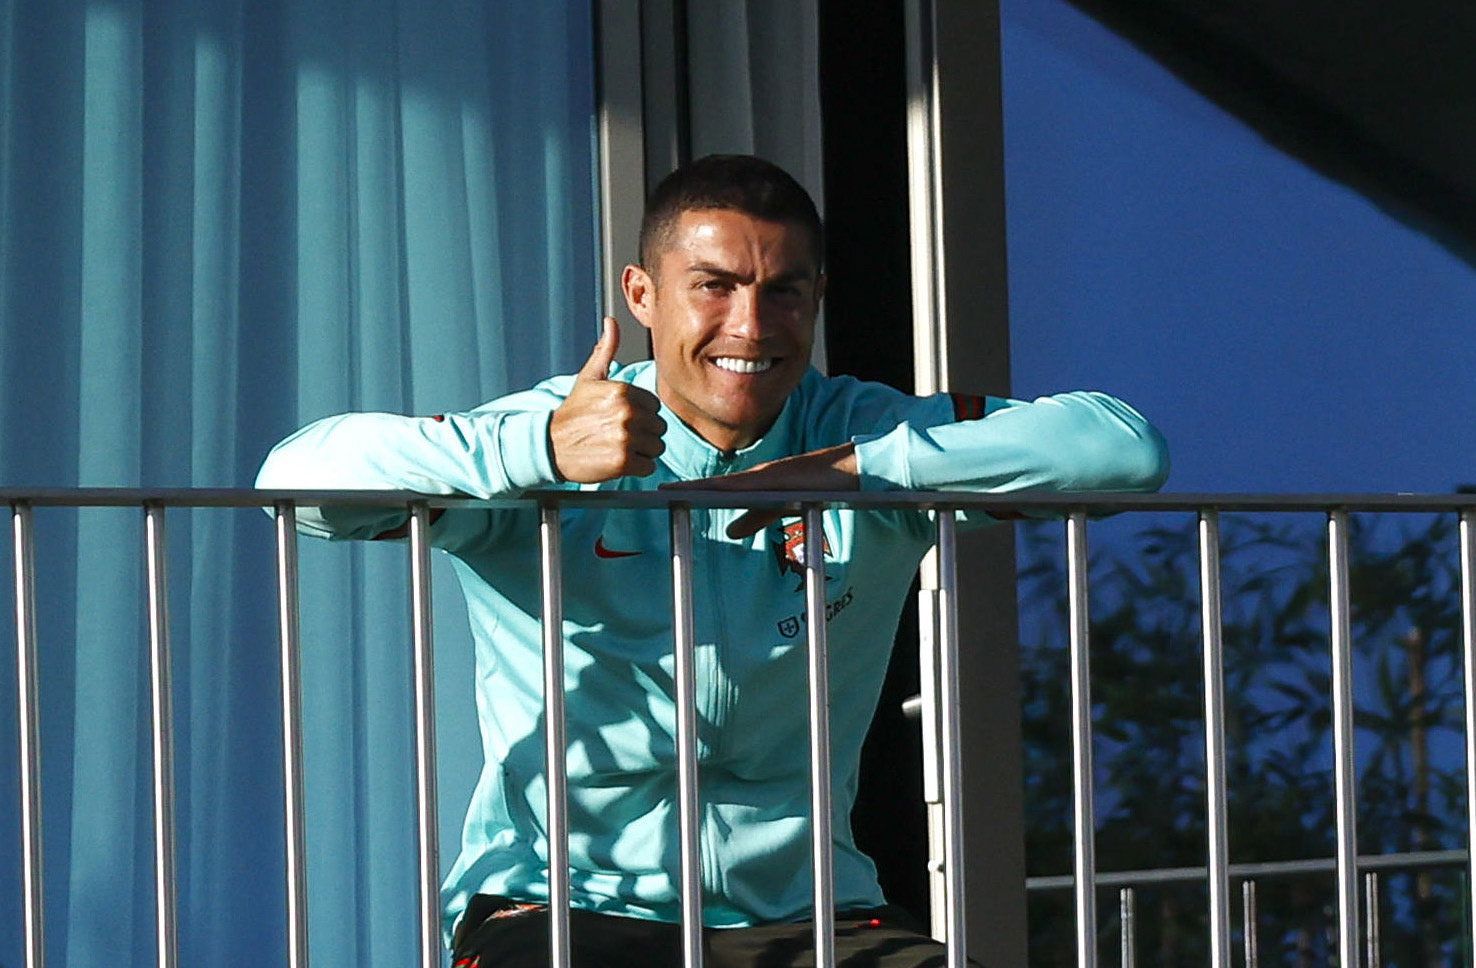 Szerencsére nincsen komoly baja Ronaldonak, ez a képen is jól látszik /Fotó: MTI/EPA/Portugál Labdarúgó-szövetség/Diogo Pinto/